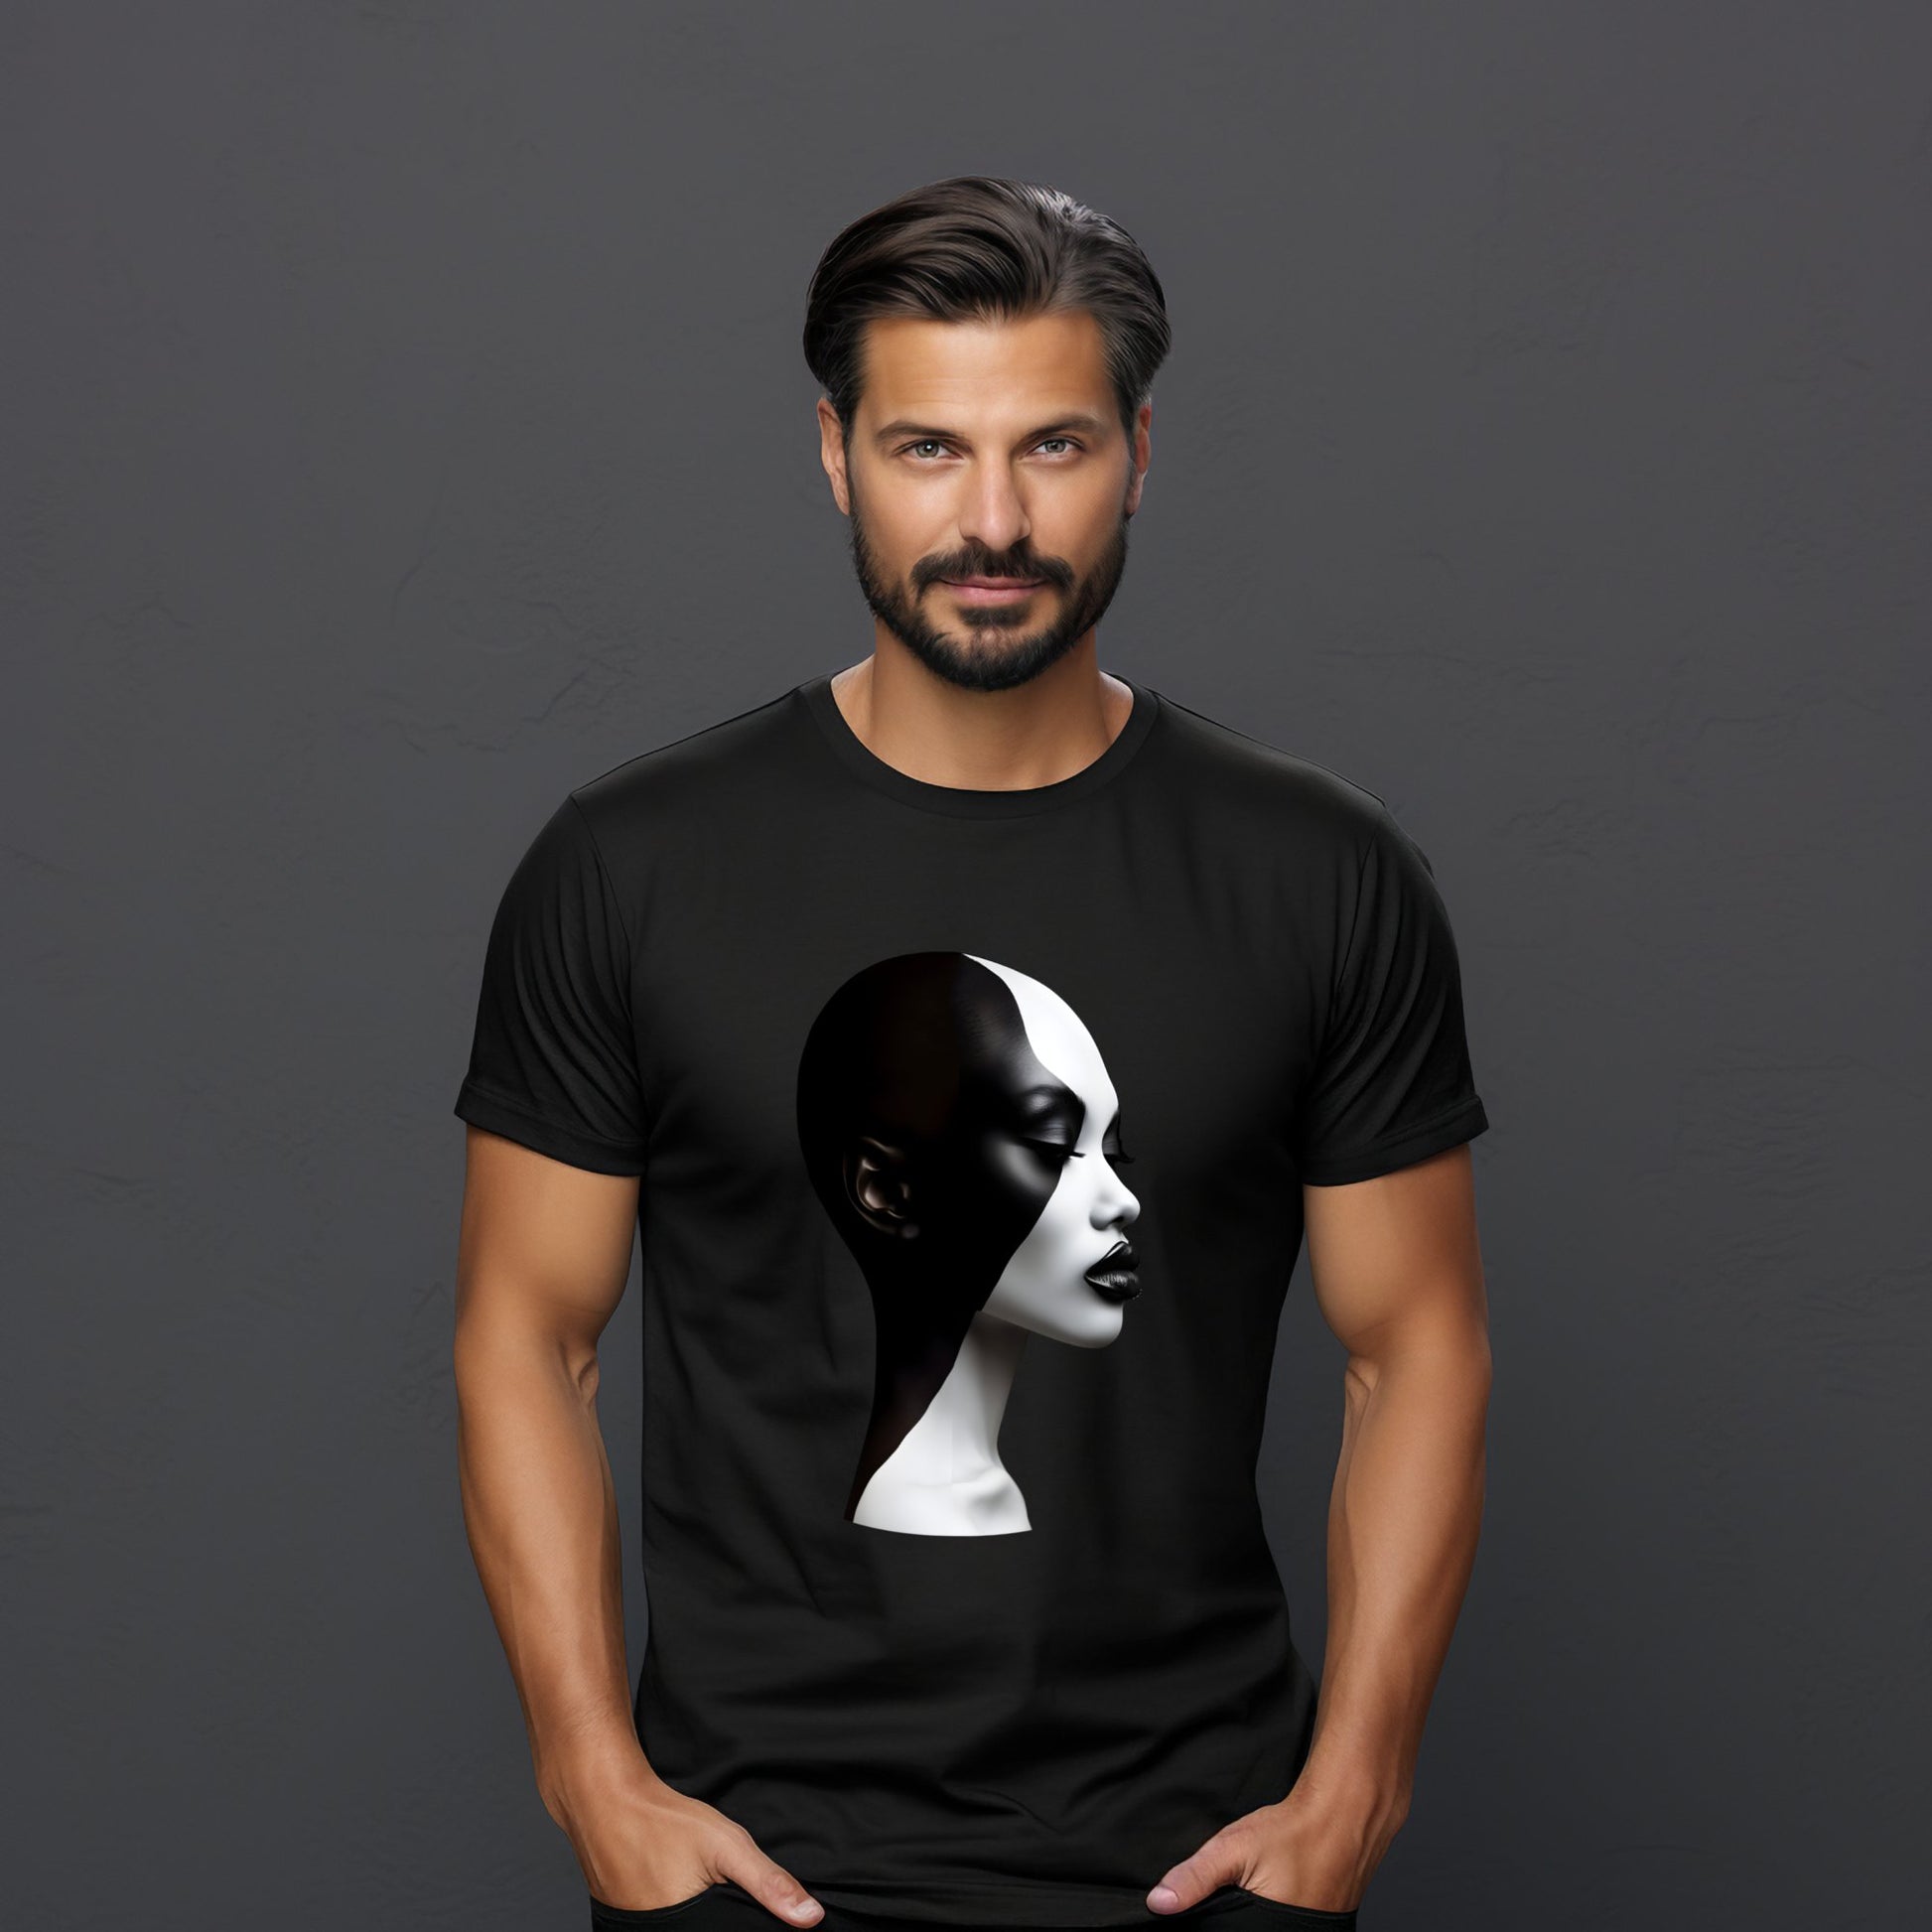 Stilingas vyras dėvintis juodus "Designedbyme.lt" Black & White marškinėlius su meniniu veido atvaizdu - puikus pasirinkimas kaip dovana draugei, dovana idejos moterims, praktiška ir originali gimtadienio dovana draugei, vyriskos marškinėliai, visų produktų kolekcijoje.